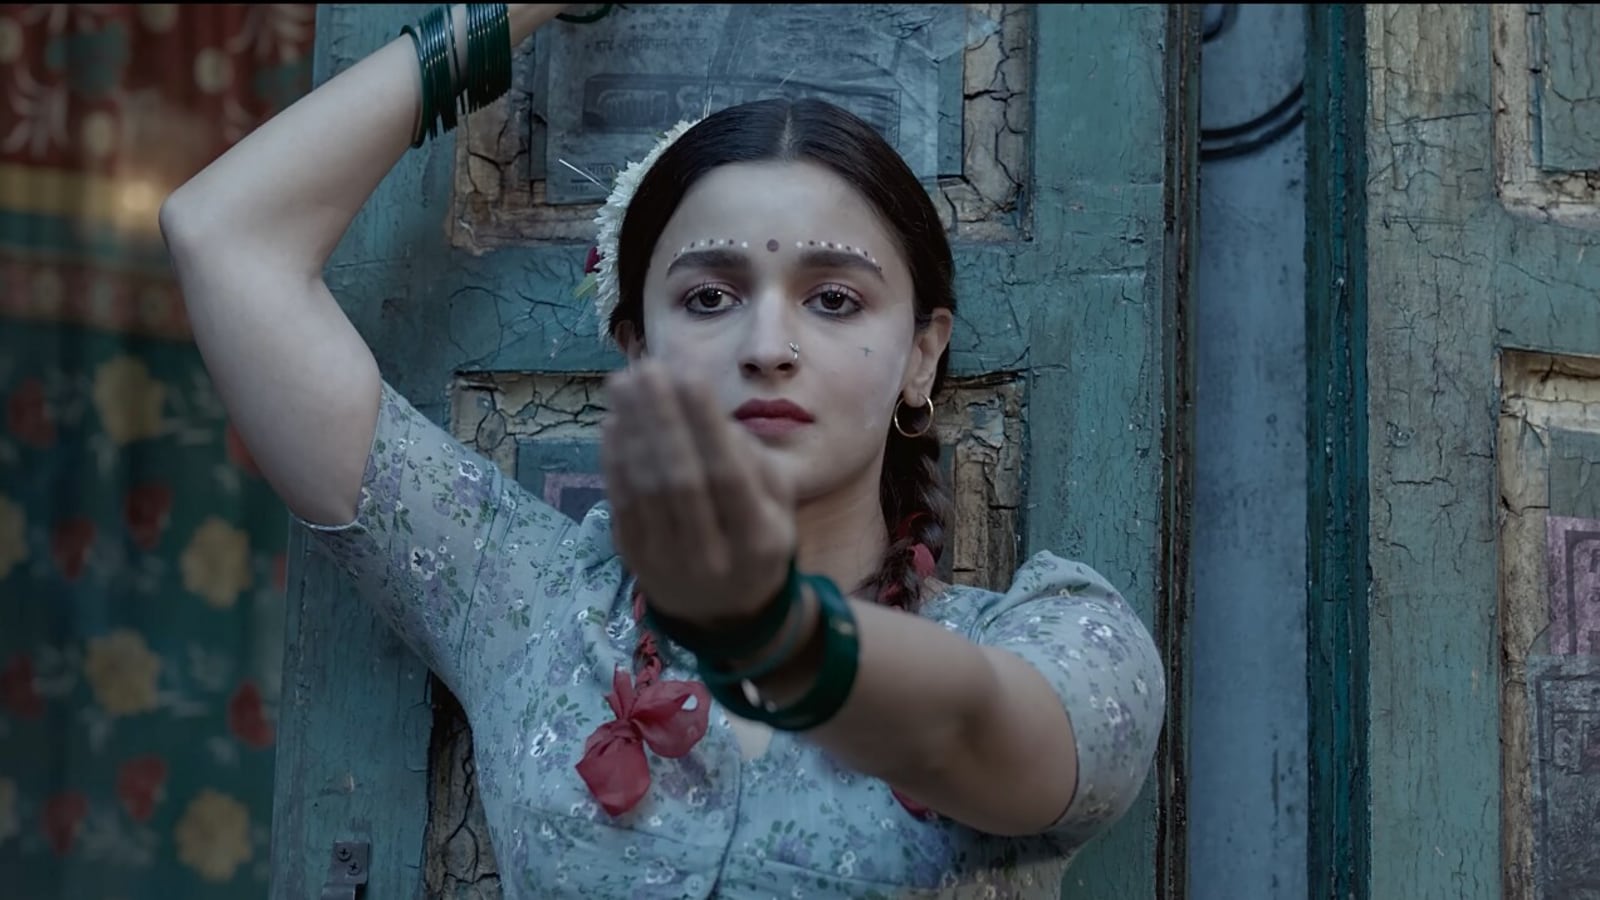 W urodziny Alii Bhatt jej niekonwencjonalne filmy, które rzucają wyzwanie społecznym tabu |  Bollywood